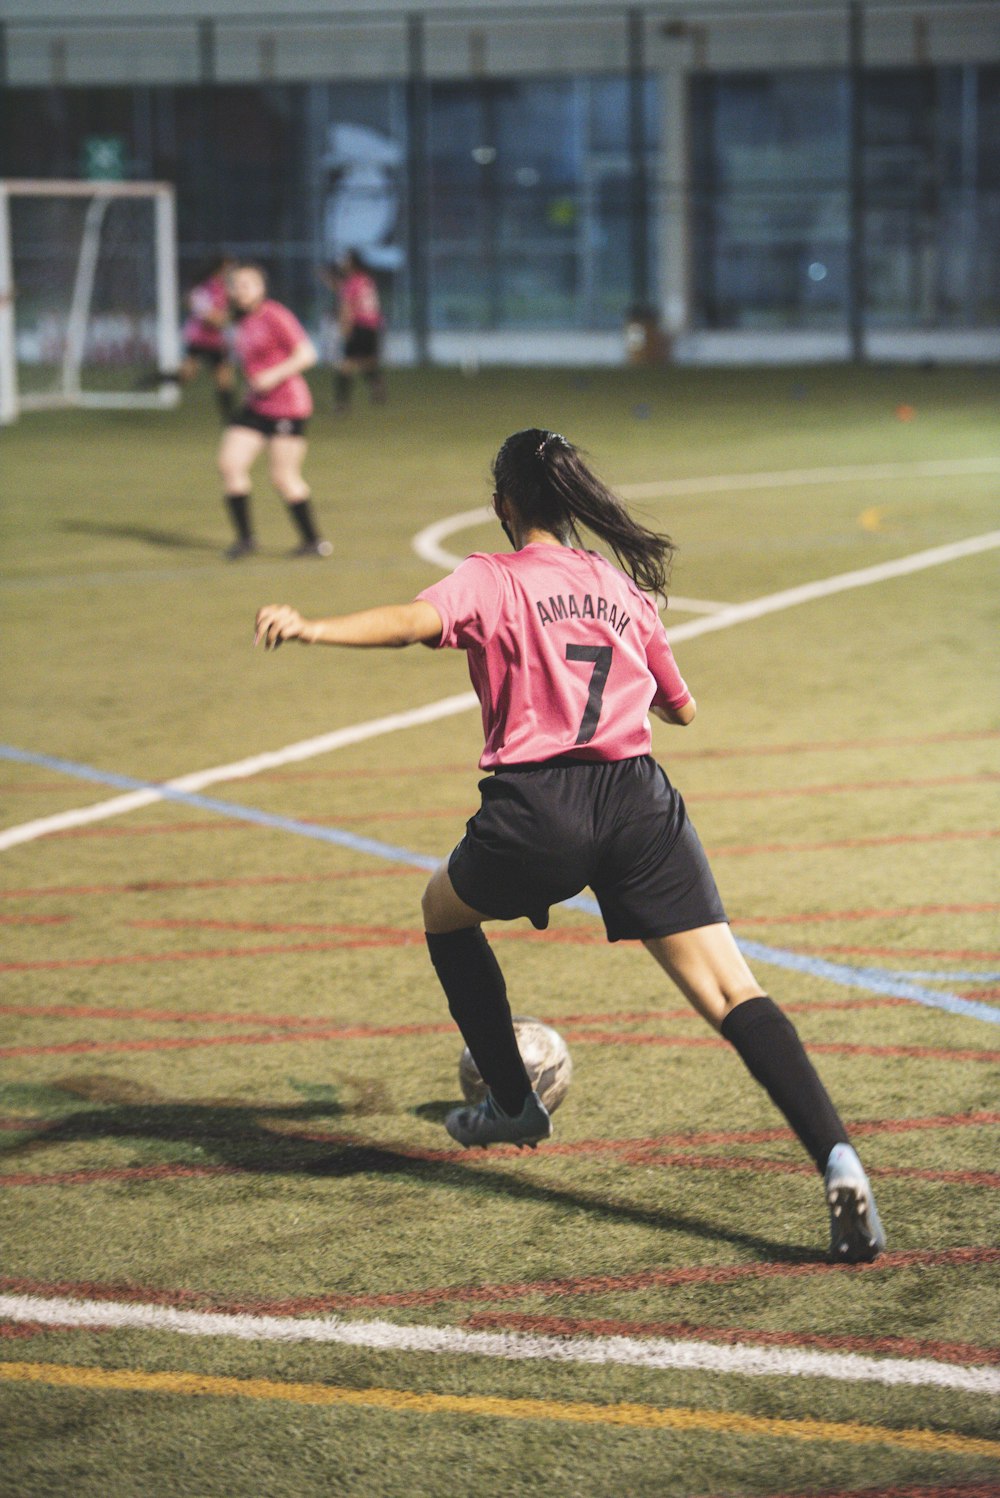 빨간색과 흰색 축구 저지 셔츠와 검은 색 반바지를 입은 여자가 낮에 필드를 달리고 있습니다.